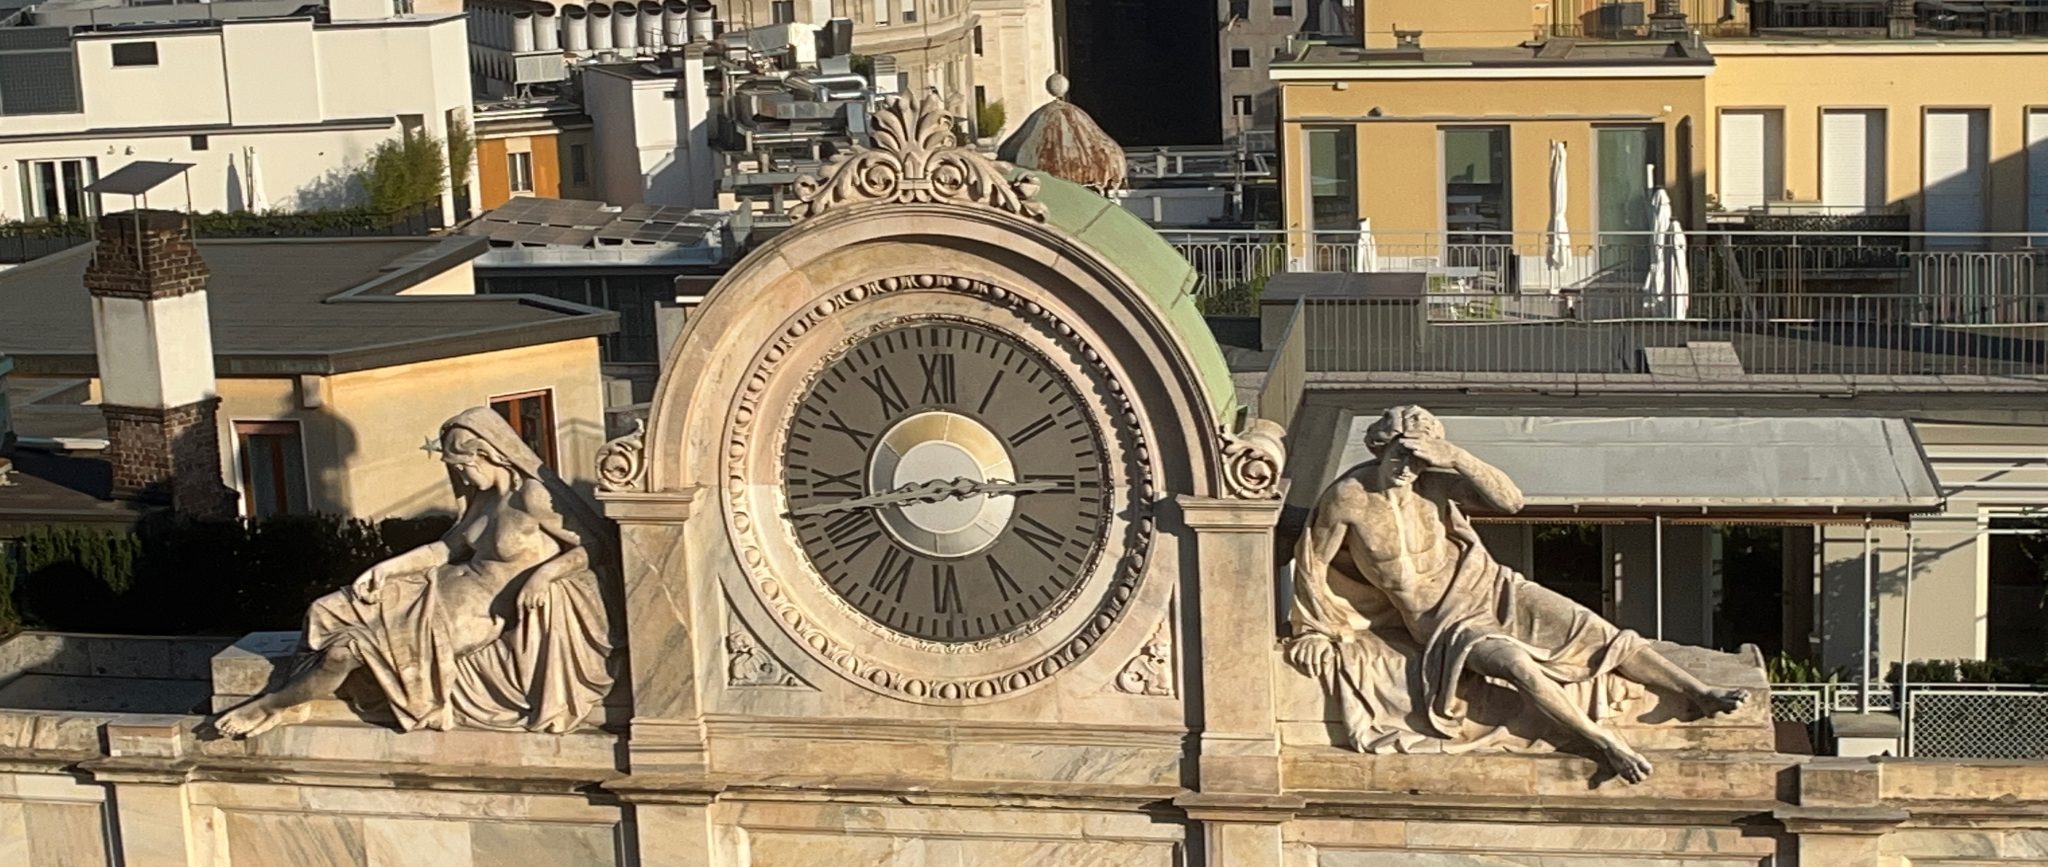 Statuesque clock, Milan, Italy